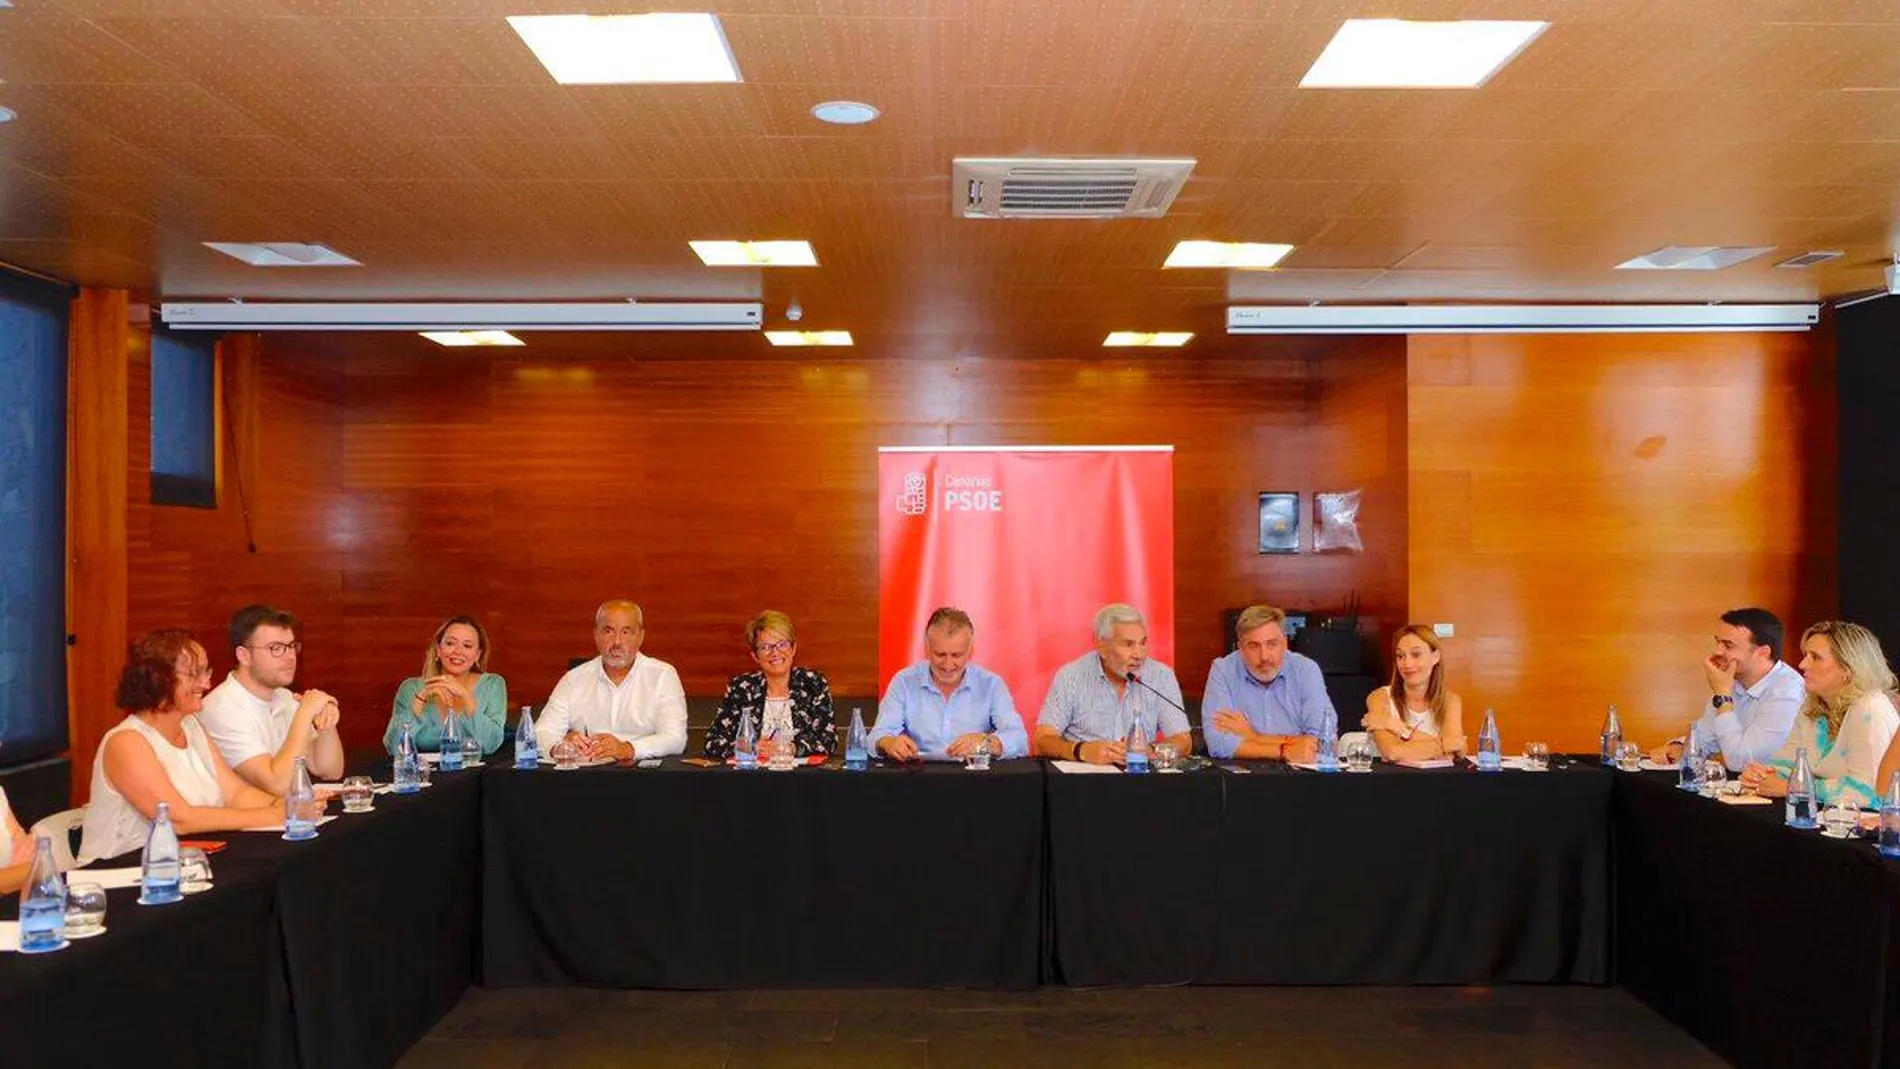 Reunión de la Comisión Ejecutiva Regional del PSOE de Canarias esta semana. (Foto: Twitter @baezdhugo)